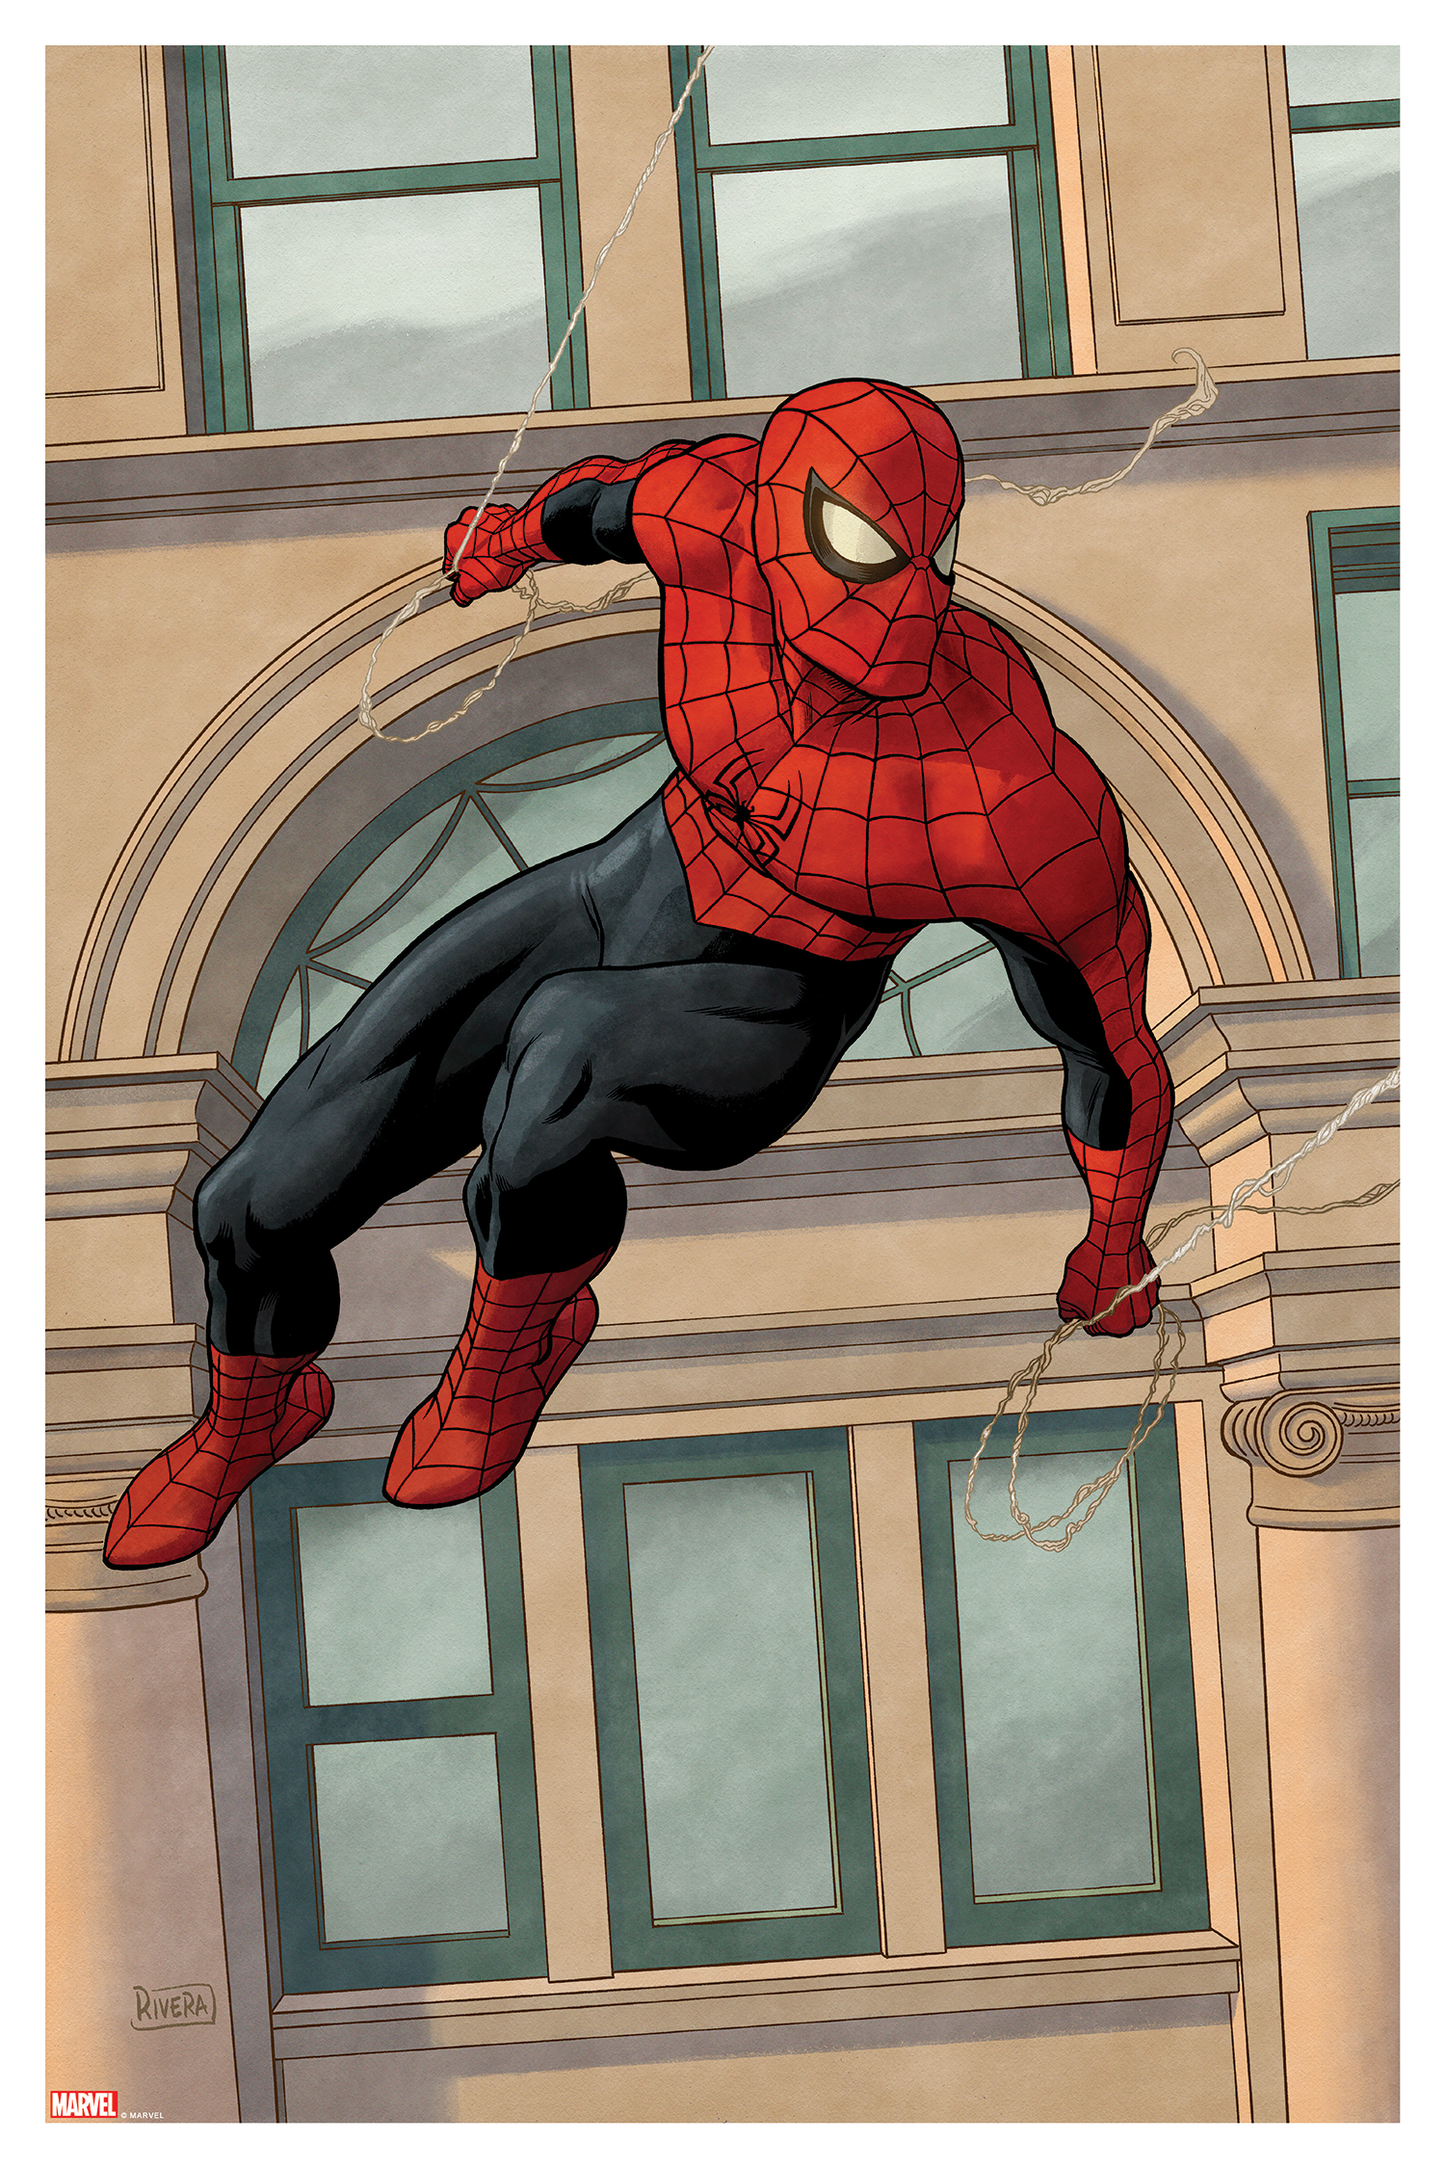 Paolo Rivera "Amazing Spider-Man #800"